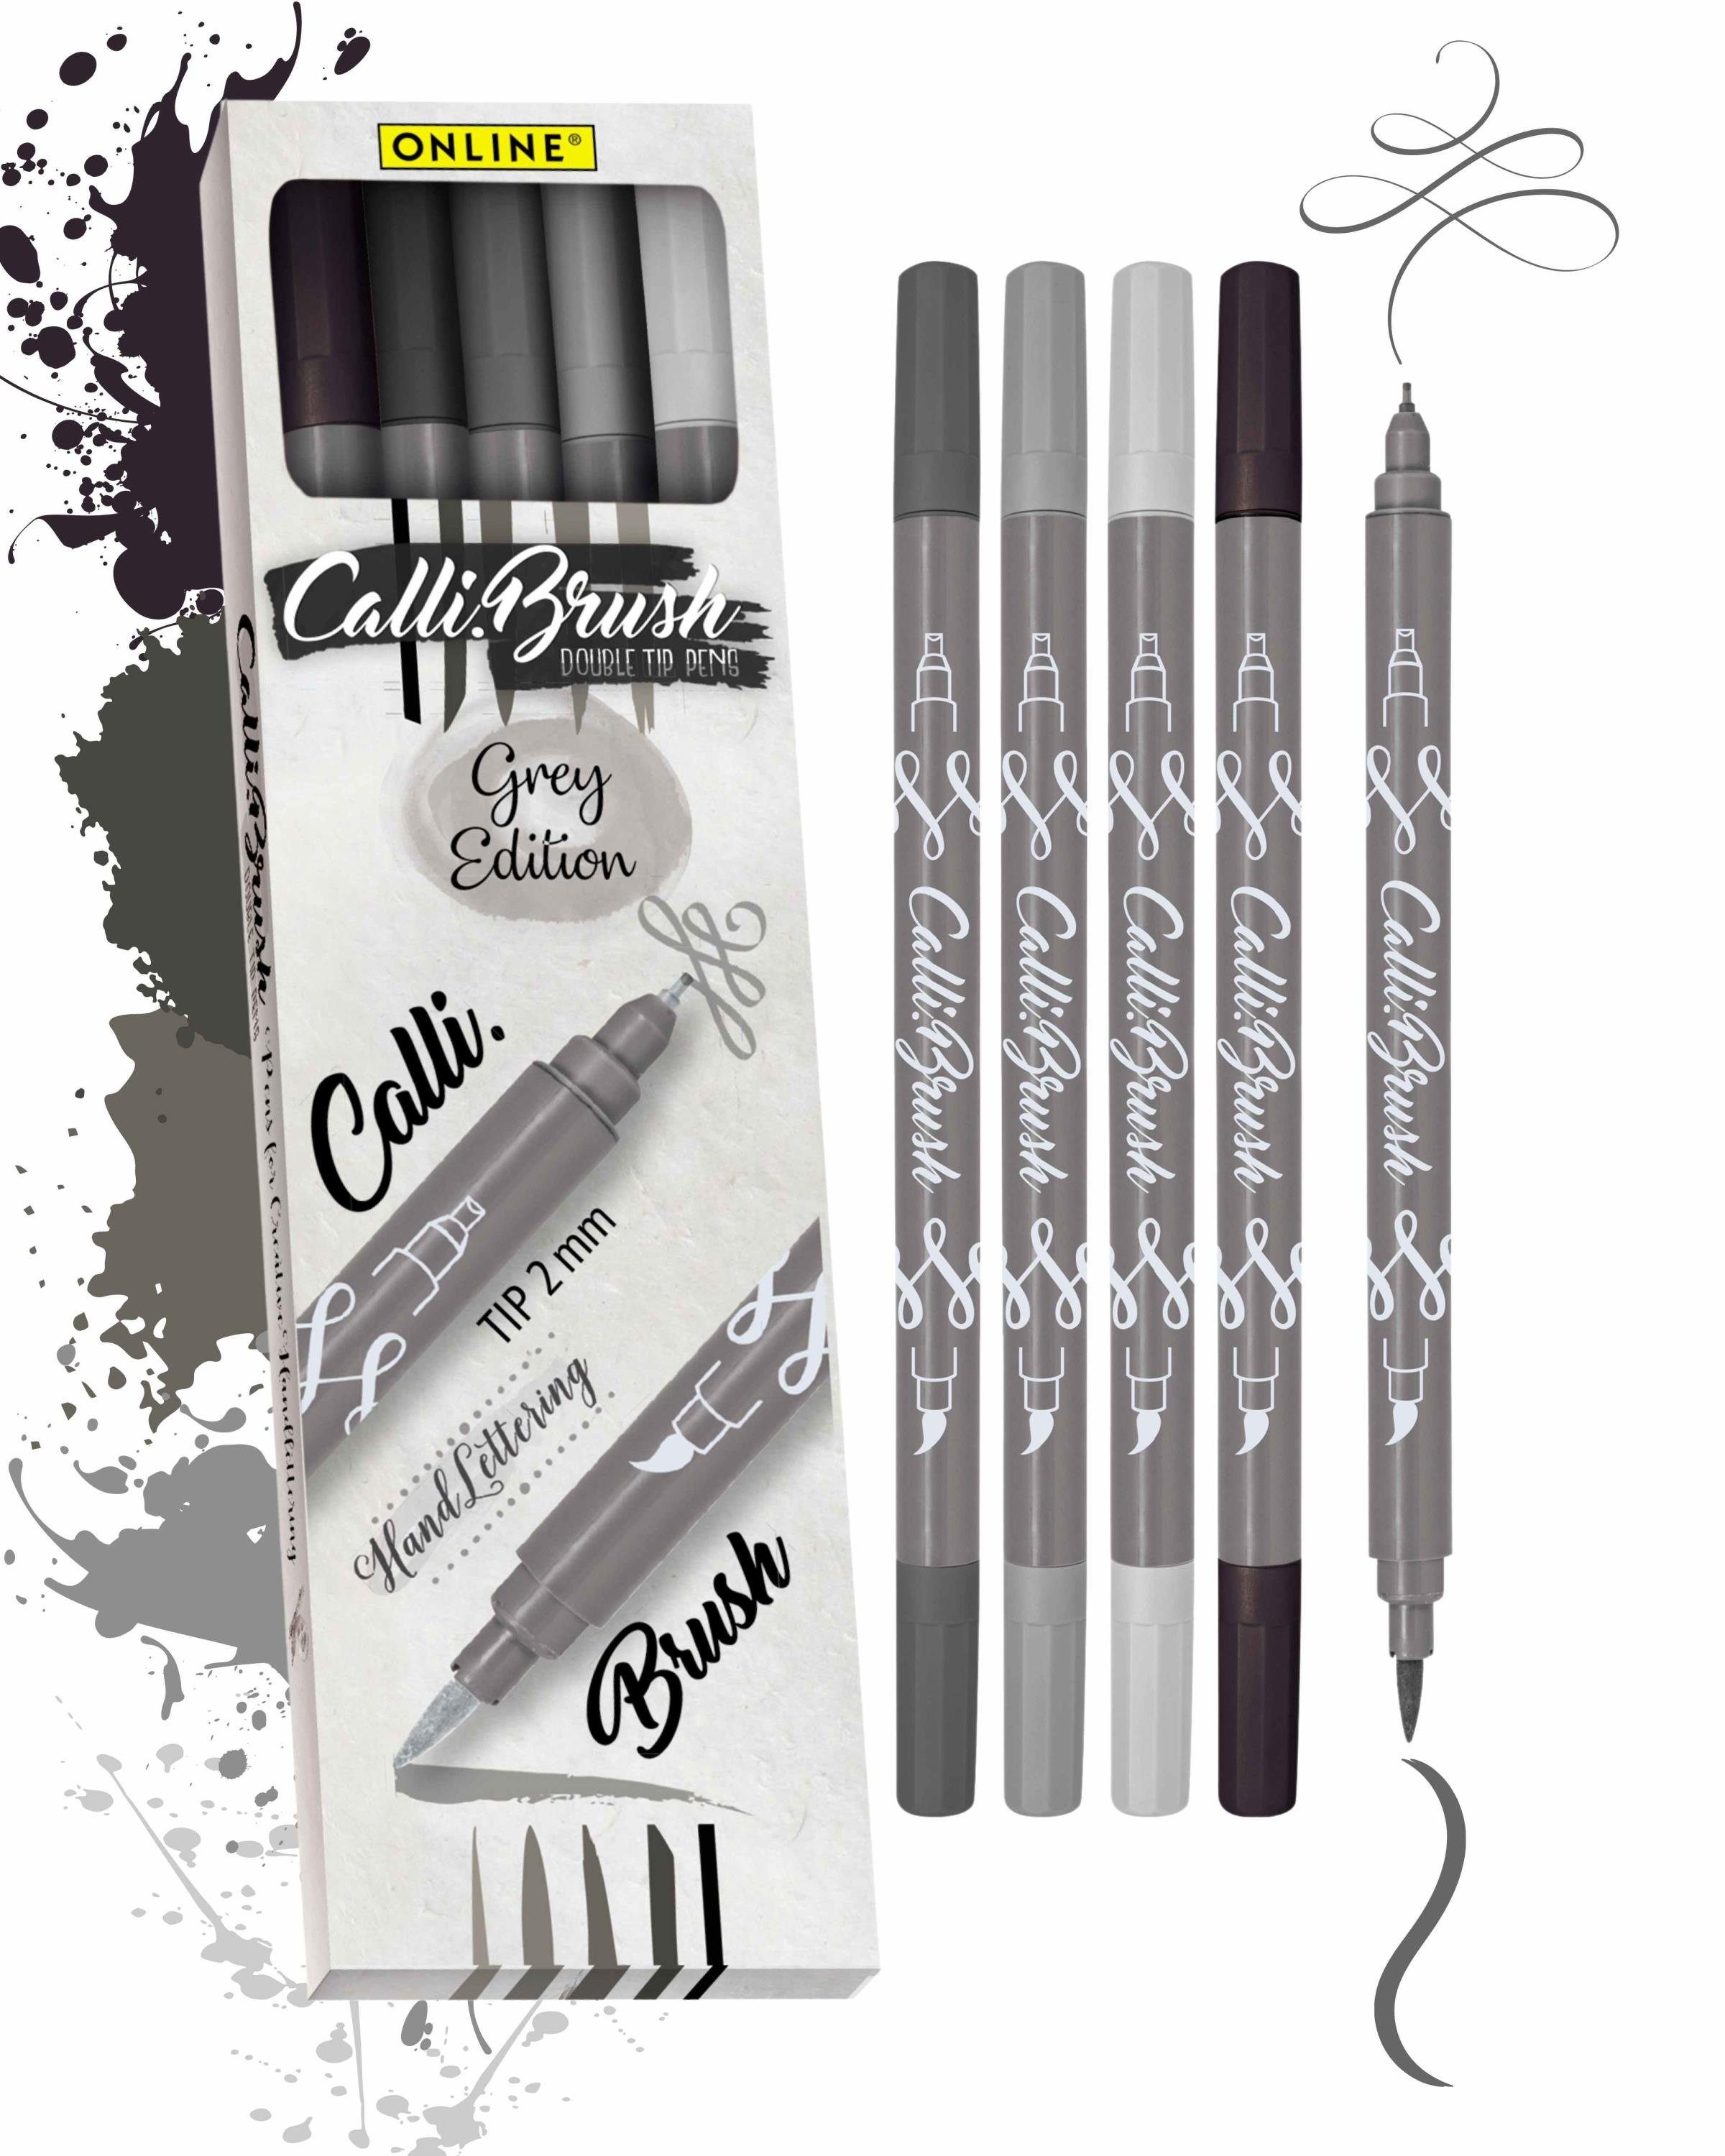 Online Pen Fineliner Handlettering Calli.Brush, Spitzen Brush 5x Pens, Grey verschiedene Stifte Set, bunte